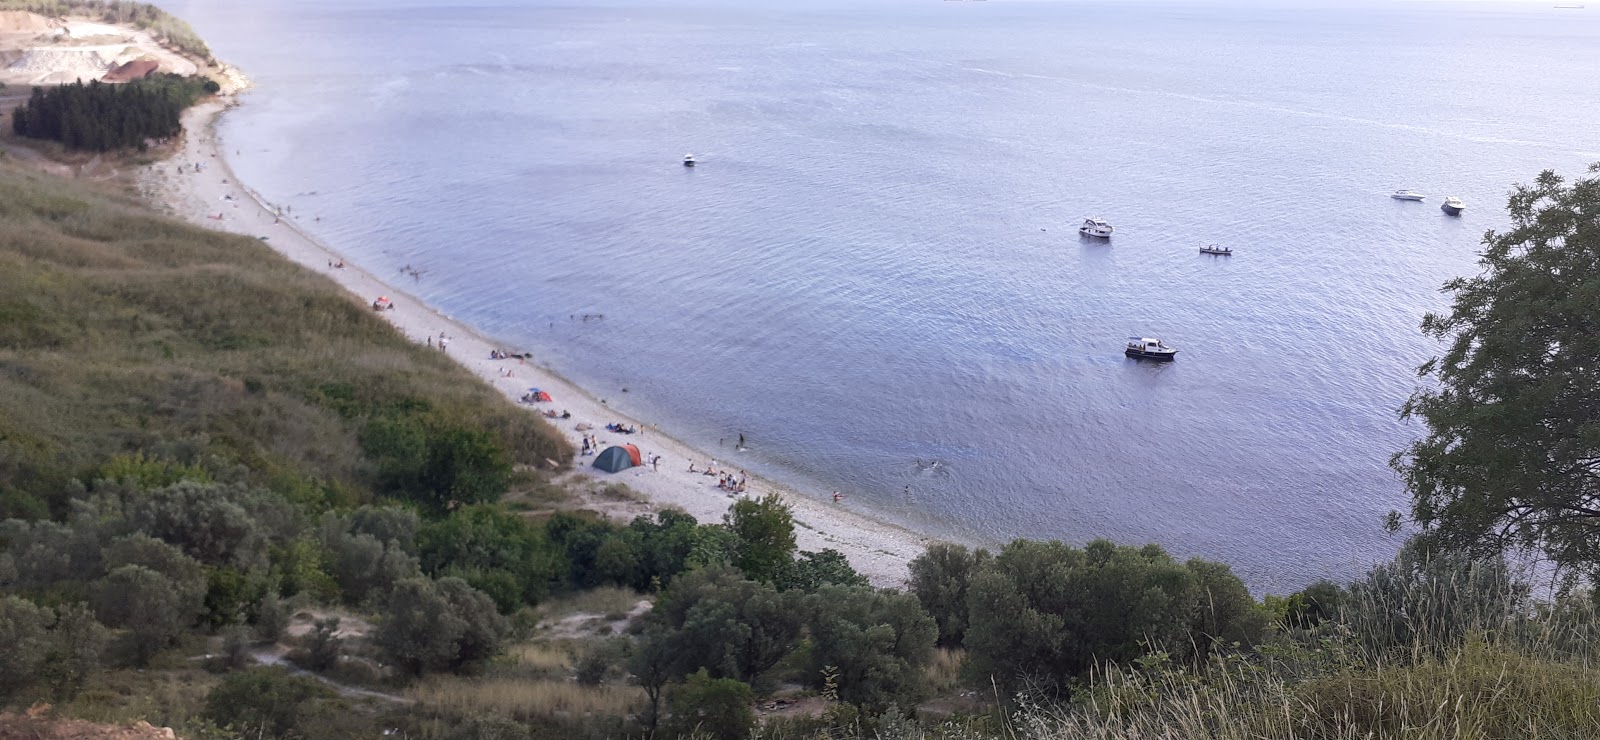 Darıca Plajı III'in fotoğrafı geniş plaj ile birlikte